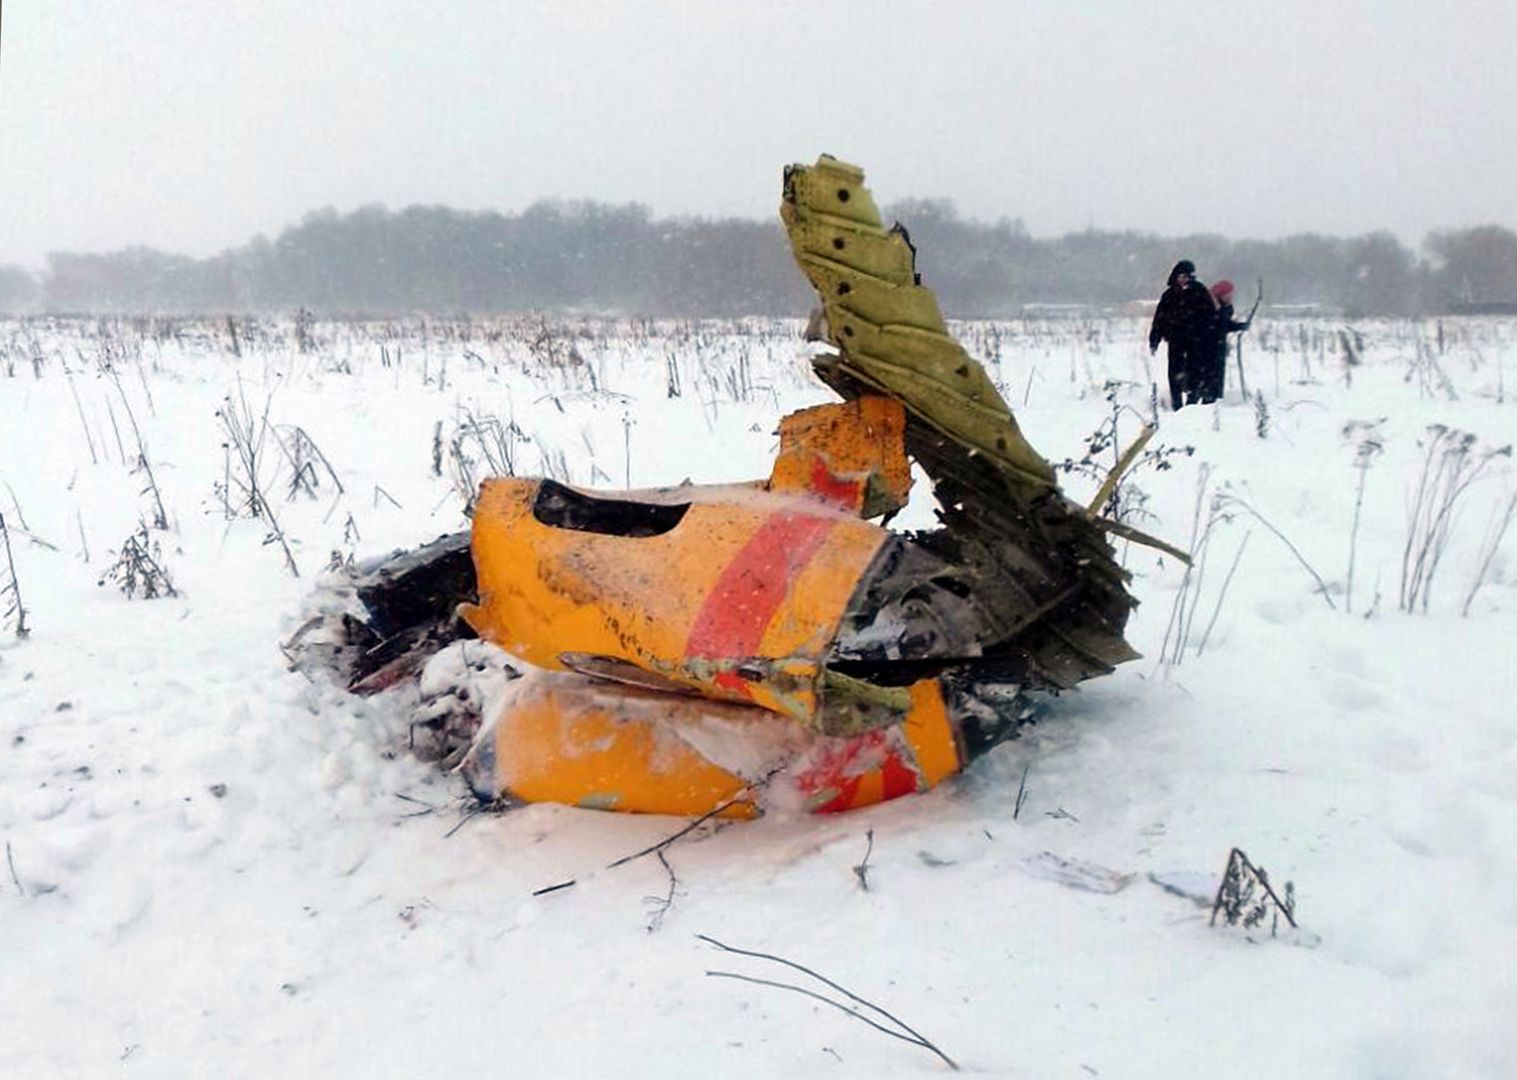 Katastrofa samolotu An-148 Saratov Airlines. Śledczy ogłosili przyczyny